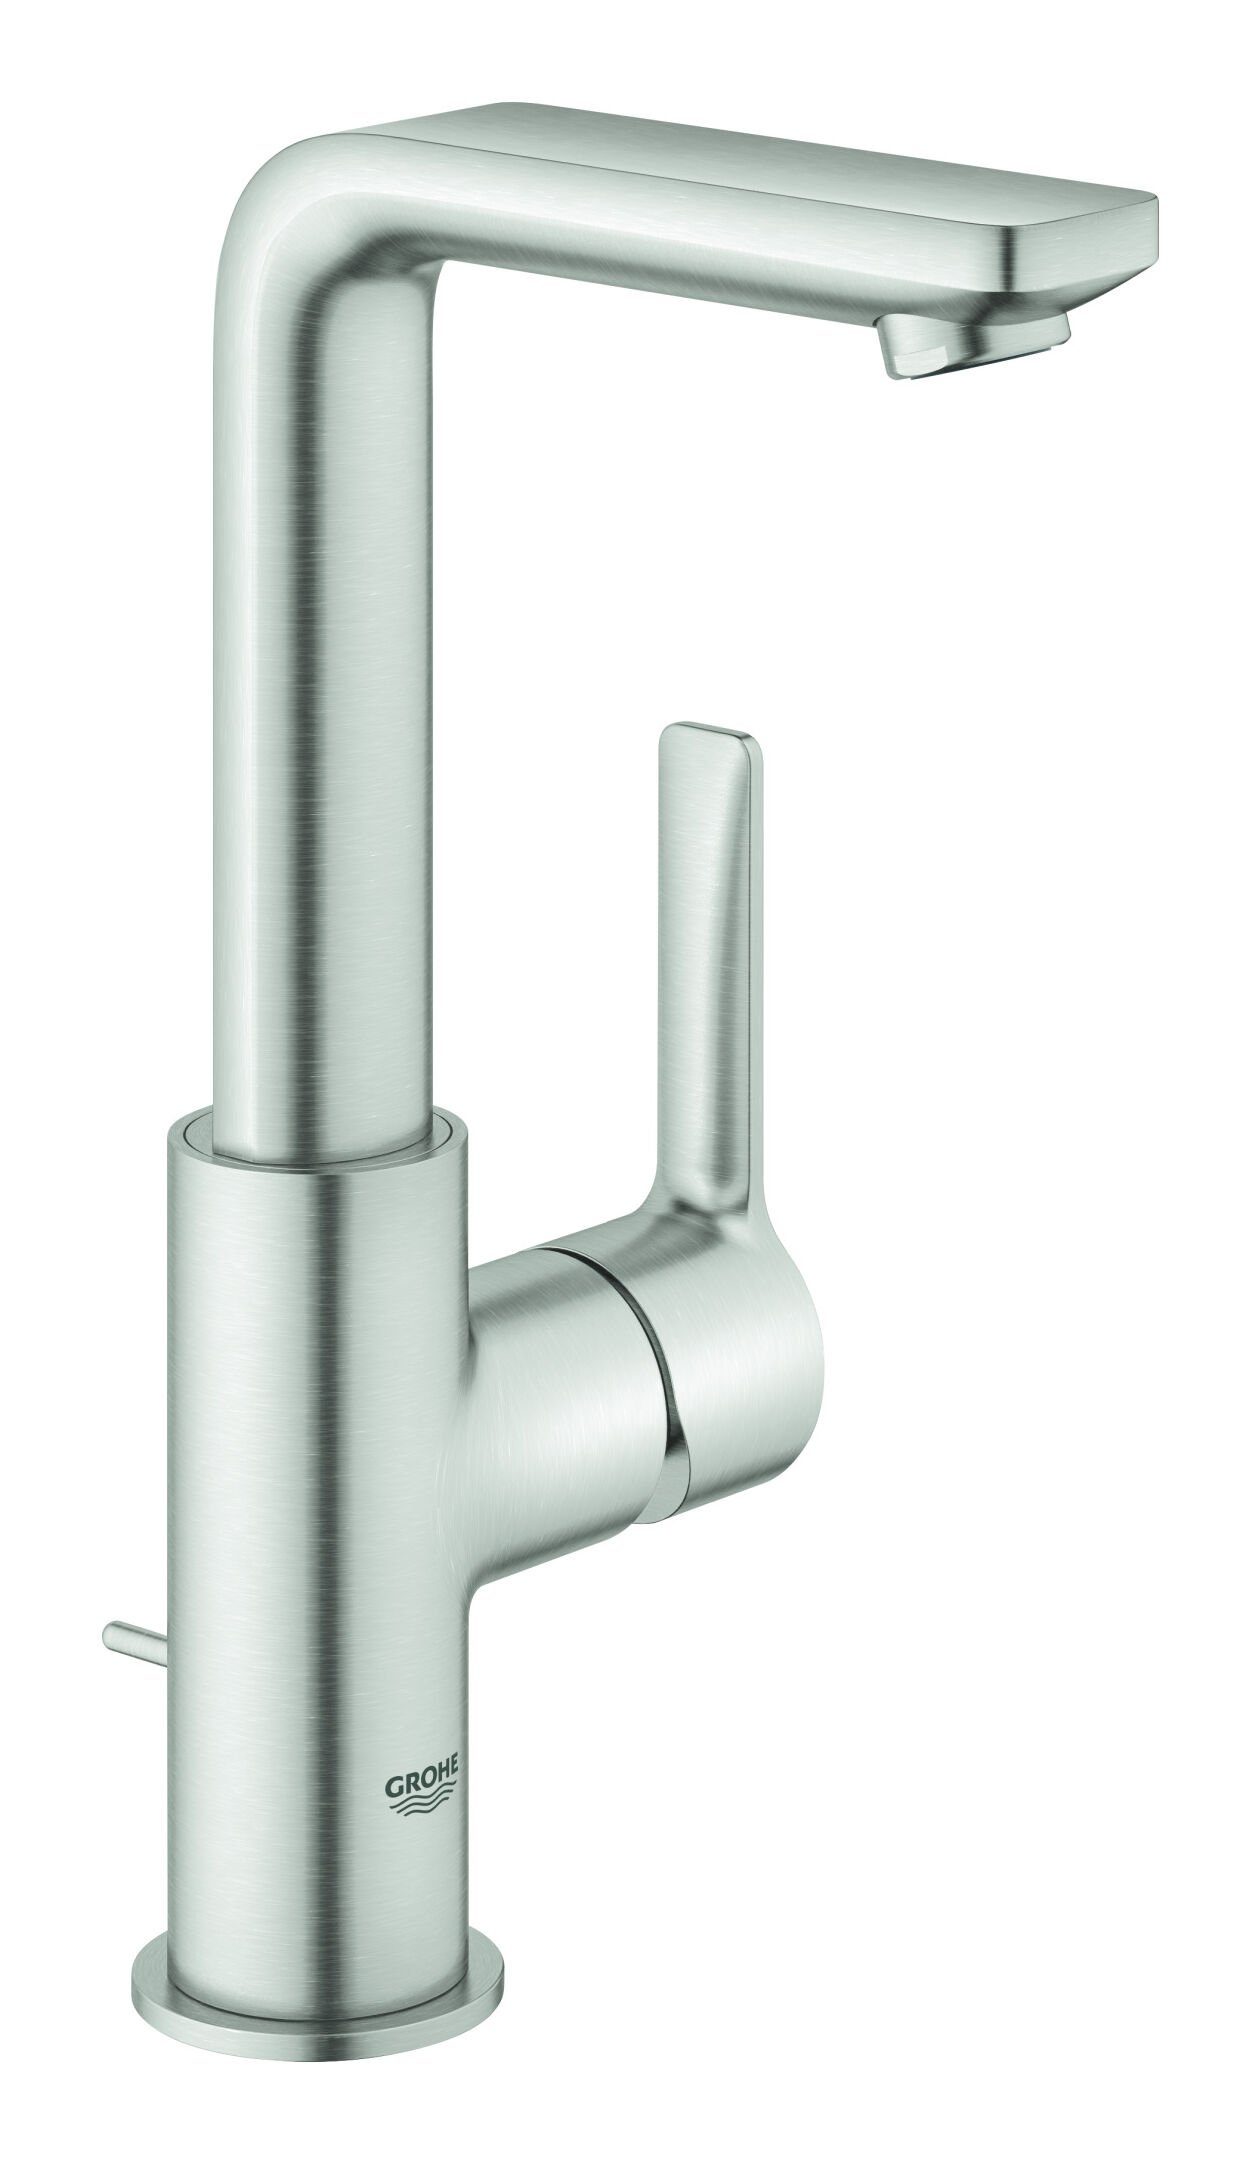 Zugstangen-Ablaufgarnitur L-Size - Supersteel Einhand mit Lineare Grohe Waschtischarmatur